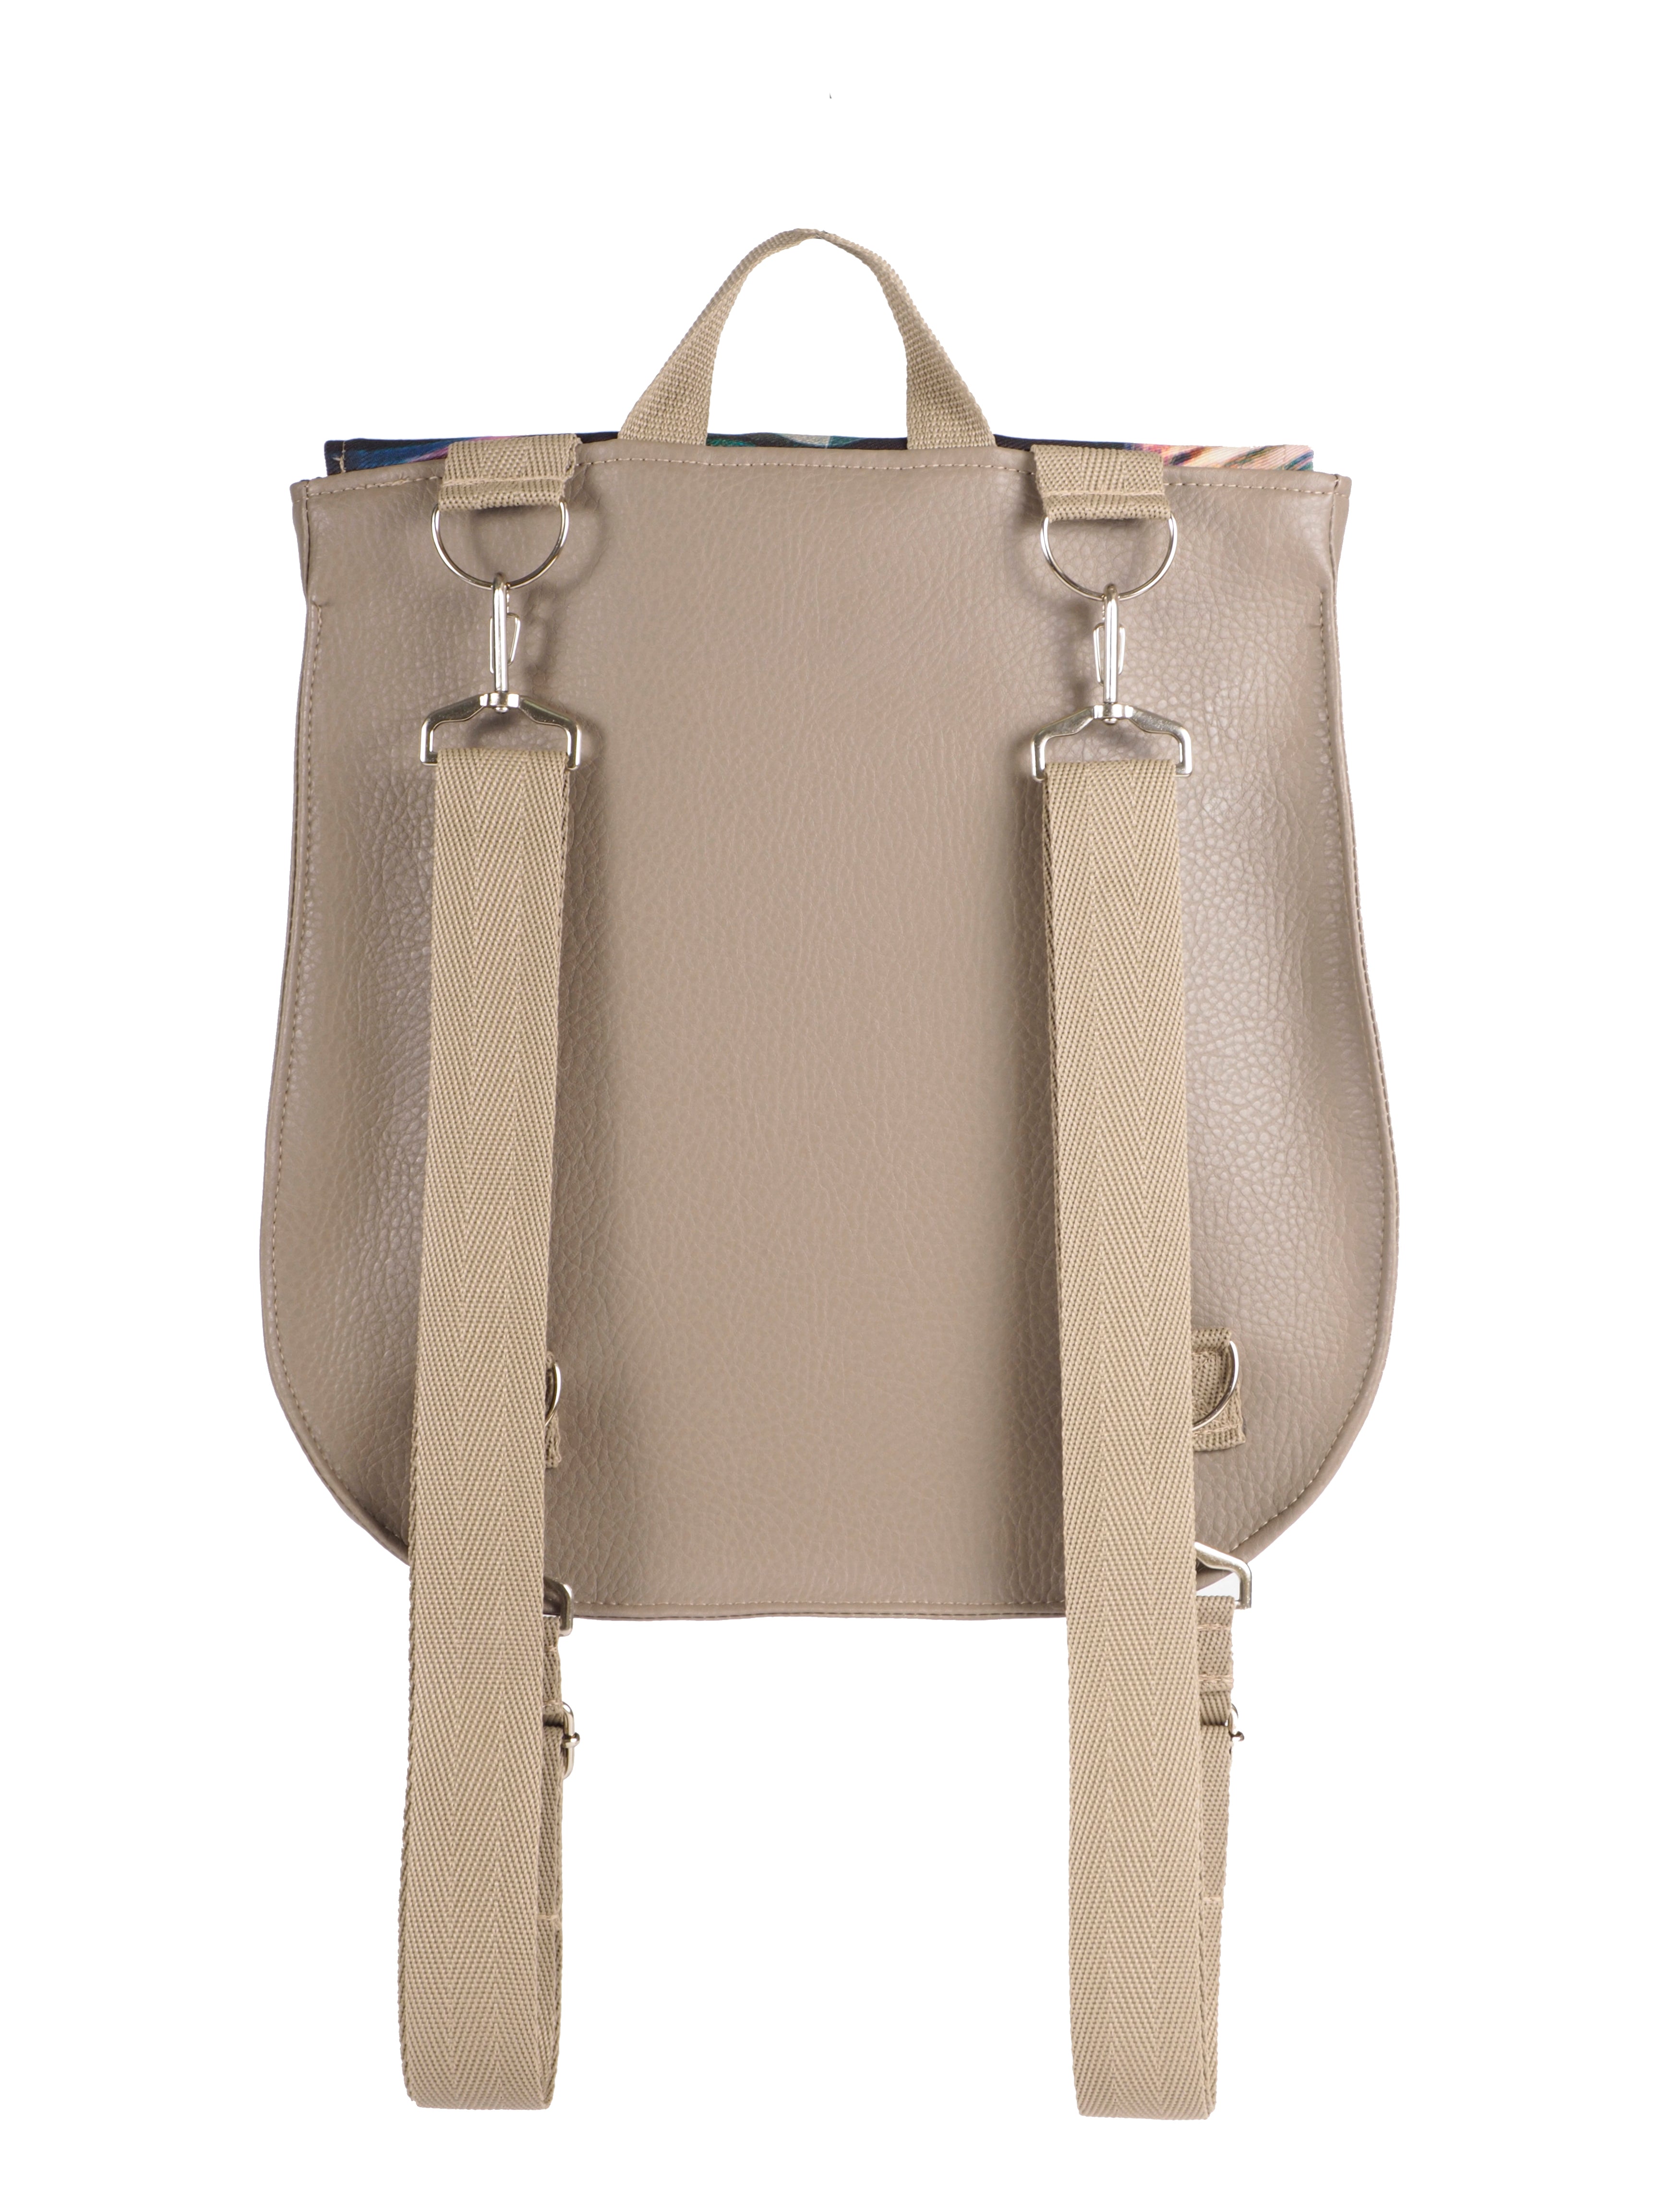 Bardo backpack&bag - Sunlight - Premium bardo backpack&bag from BARDO ART WORKS - Just lv85.00! Shop now at BARDO ART WORKS